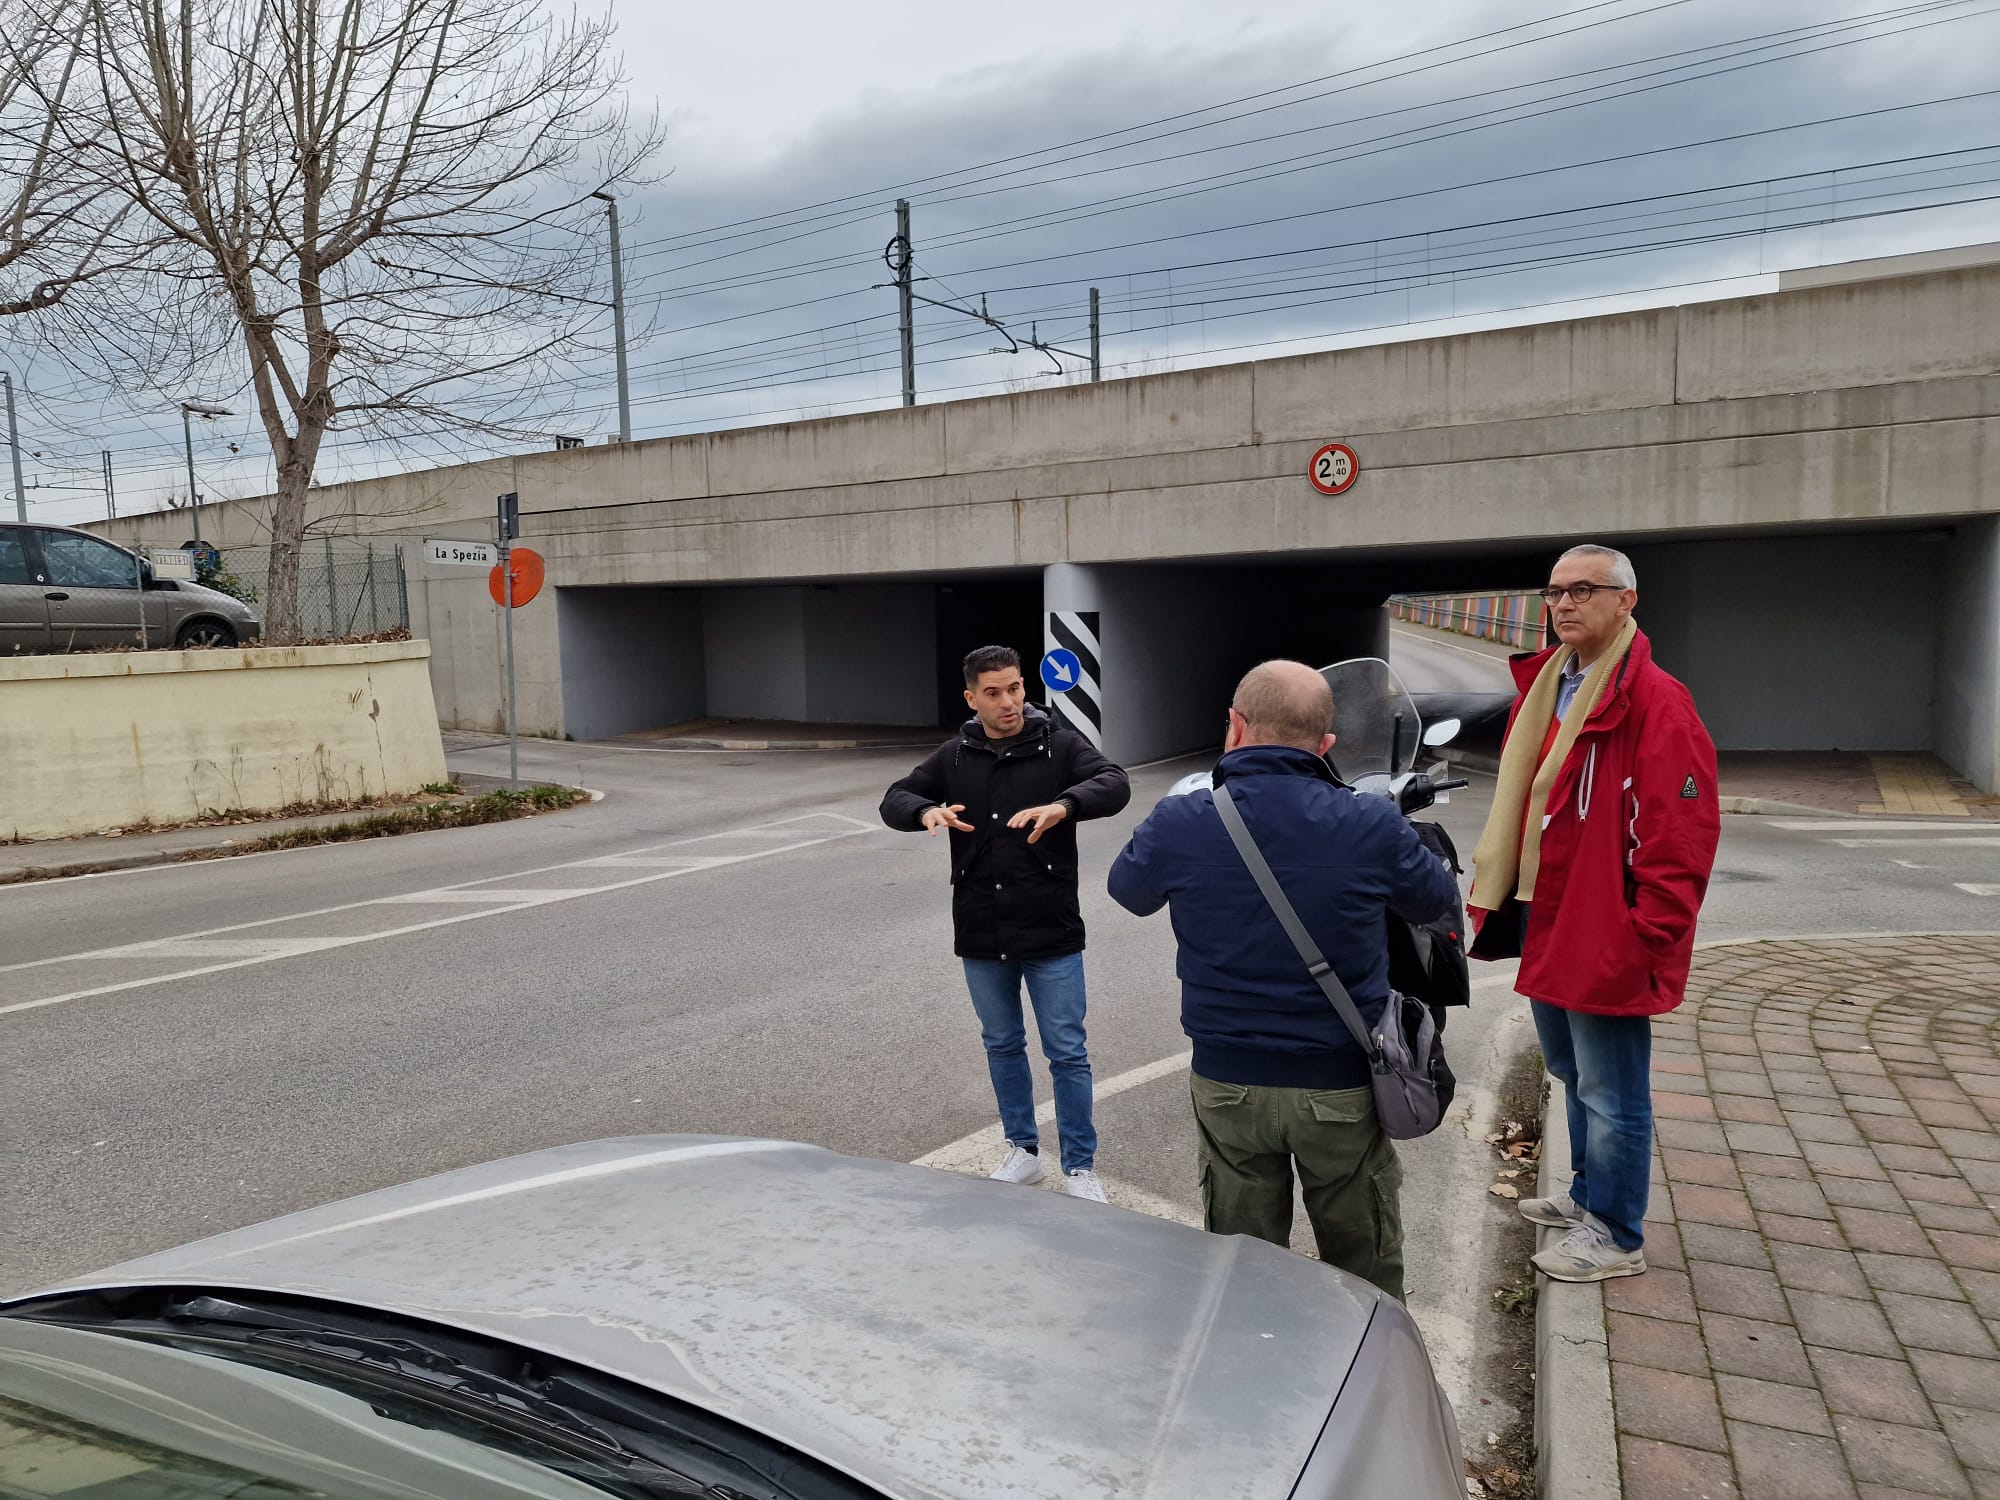 Sottopasso di viale La Spezia:  prende il via la prima fase dei lavori per la messa in sicurezza